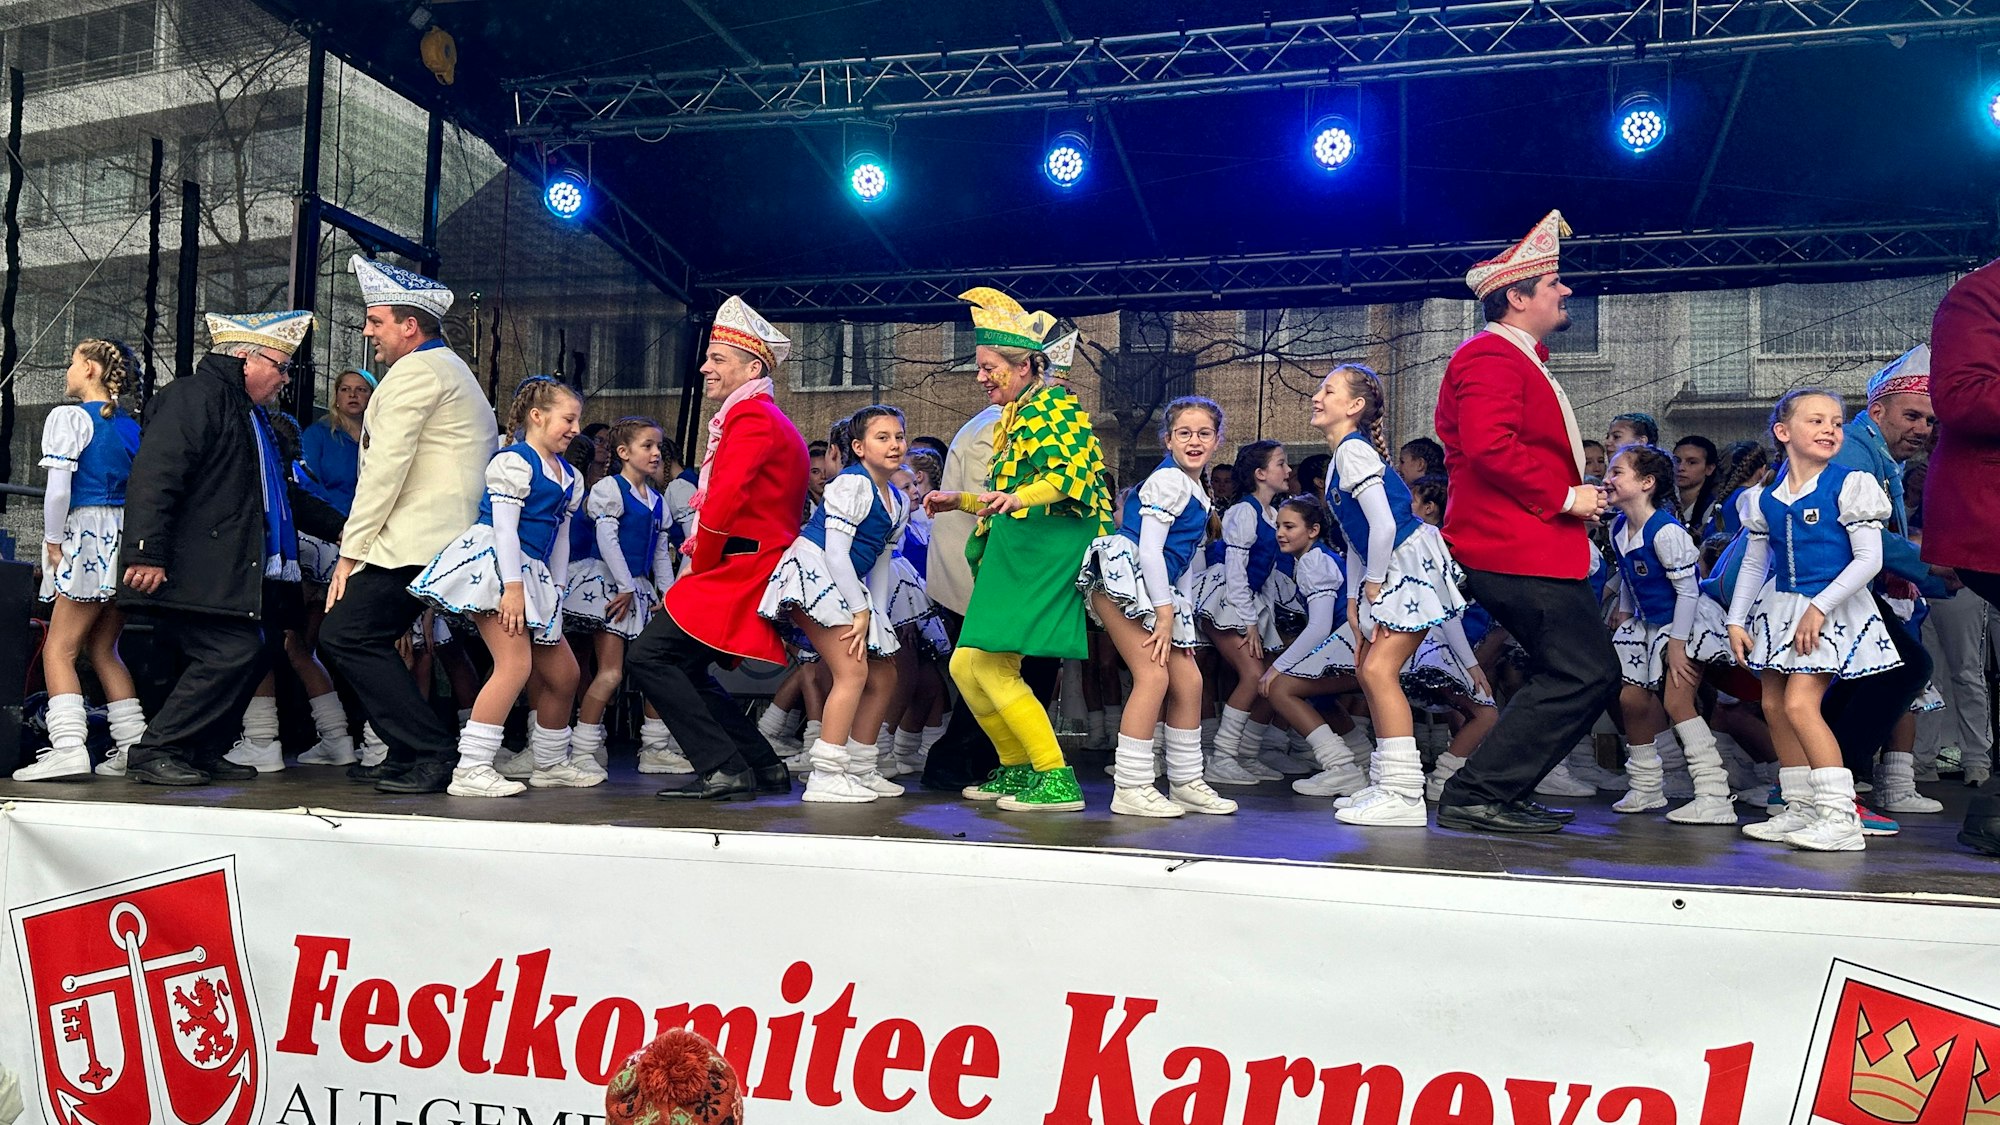 Auf einer Bühne tanzen Männer und blau-weiß-kostümierte Mädchen.